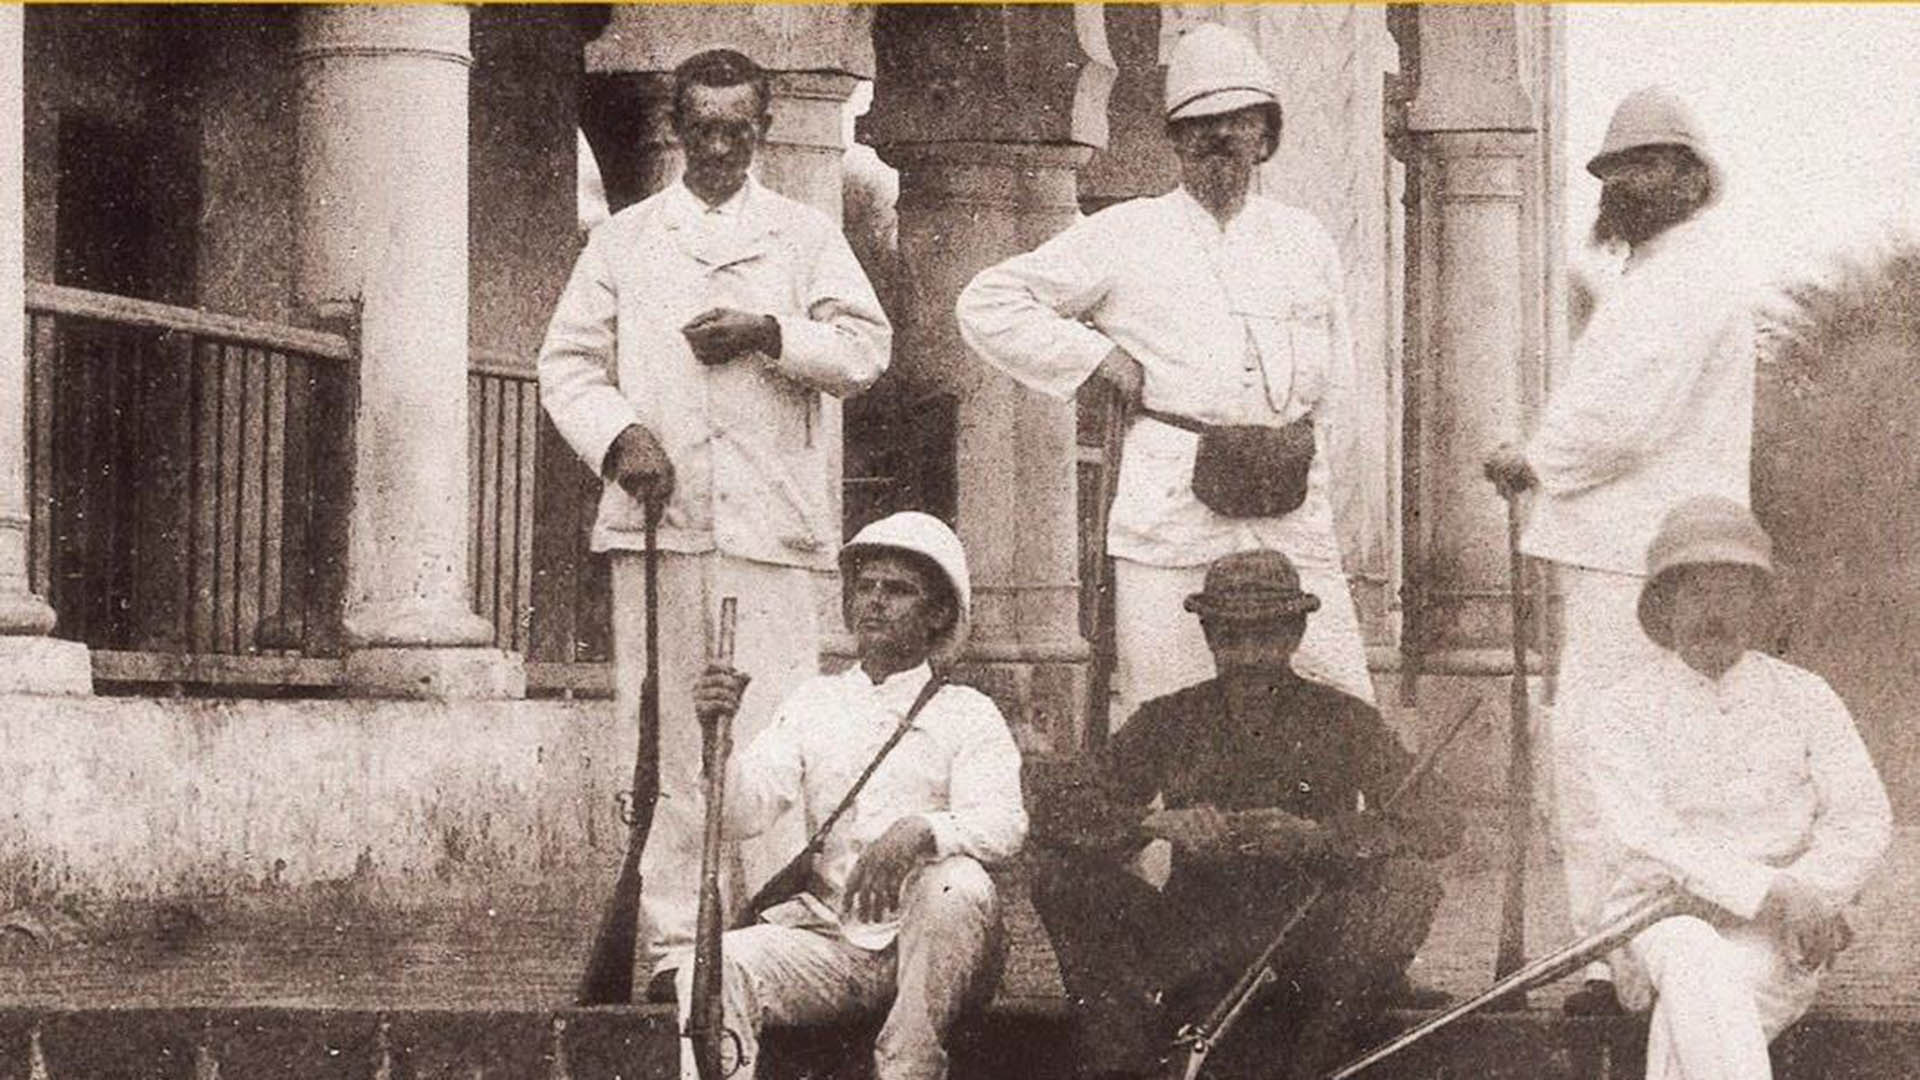 Georges Révoil, “Environs d’Aden. Avant le déjeuner à Sheikh Othman”, 1880. Rimbaud es el único que no lleva sombrero, todos posan con su fusil, todos los demás tienen una pose triunfante. Quizás el antiguo poeta se sentía alejado del uniforme y la actitud colonial.